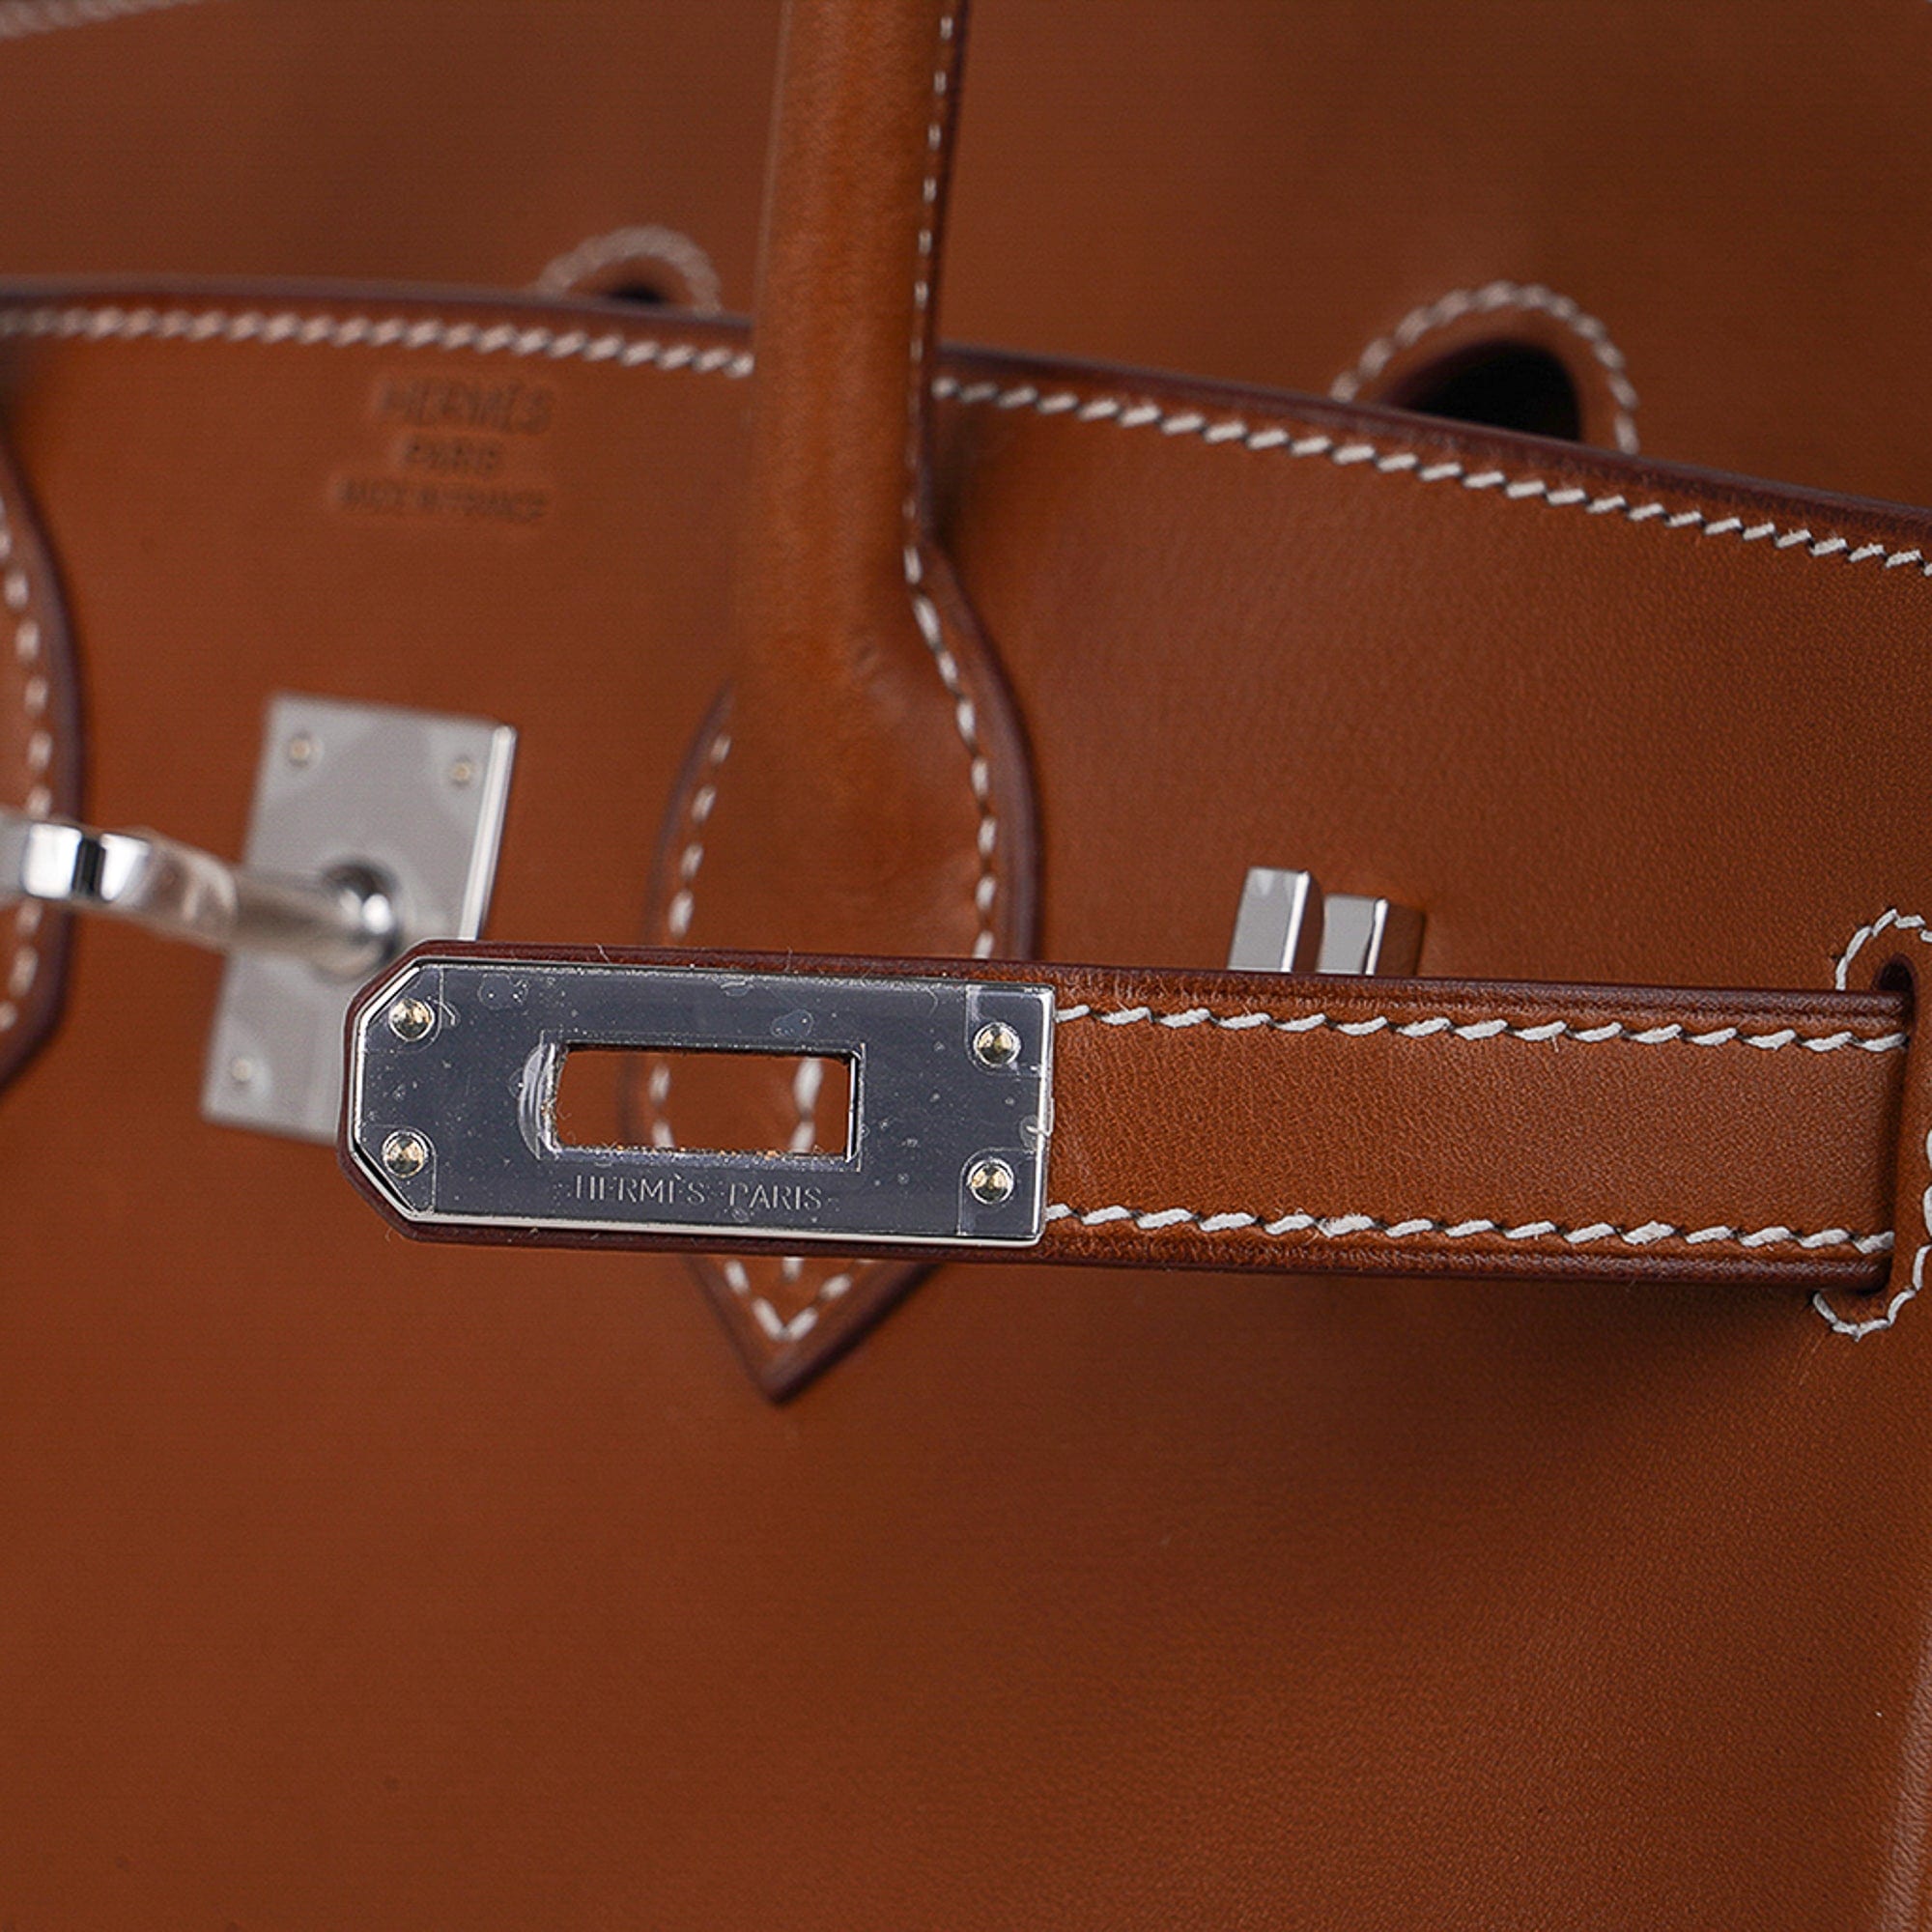 Hermes Birkin barenia saddle brown Silver Hardware PHW 25cm Full Handmade -  lushenticbags